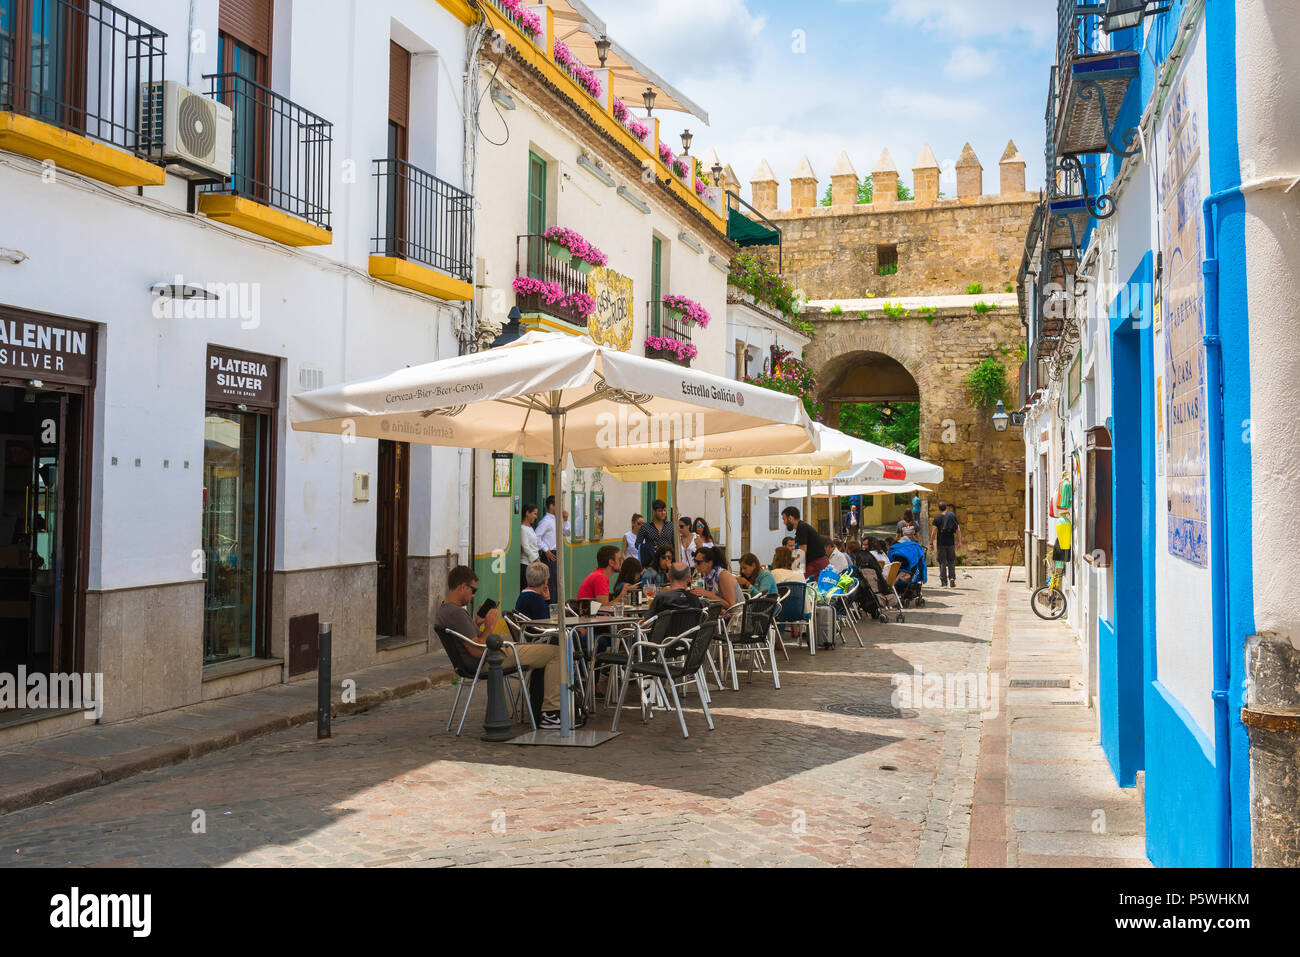 Cordoba Spanien Cafe, mit Blick auf Touristen entspannen auf der Terrasse des Cafés in einer Straße in der Juderia (alte jüdische) Viertel von Córdoba (Córdoba) Andalusien, Spanien. Stockfoto